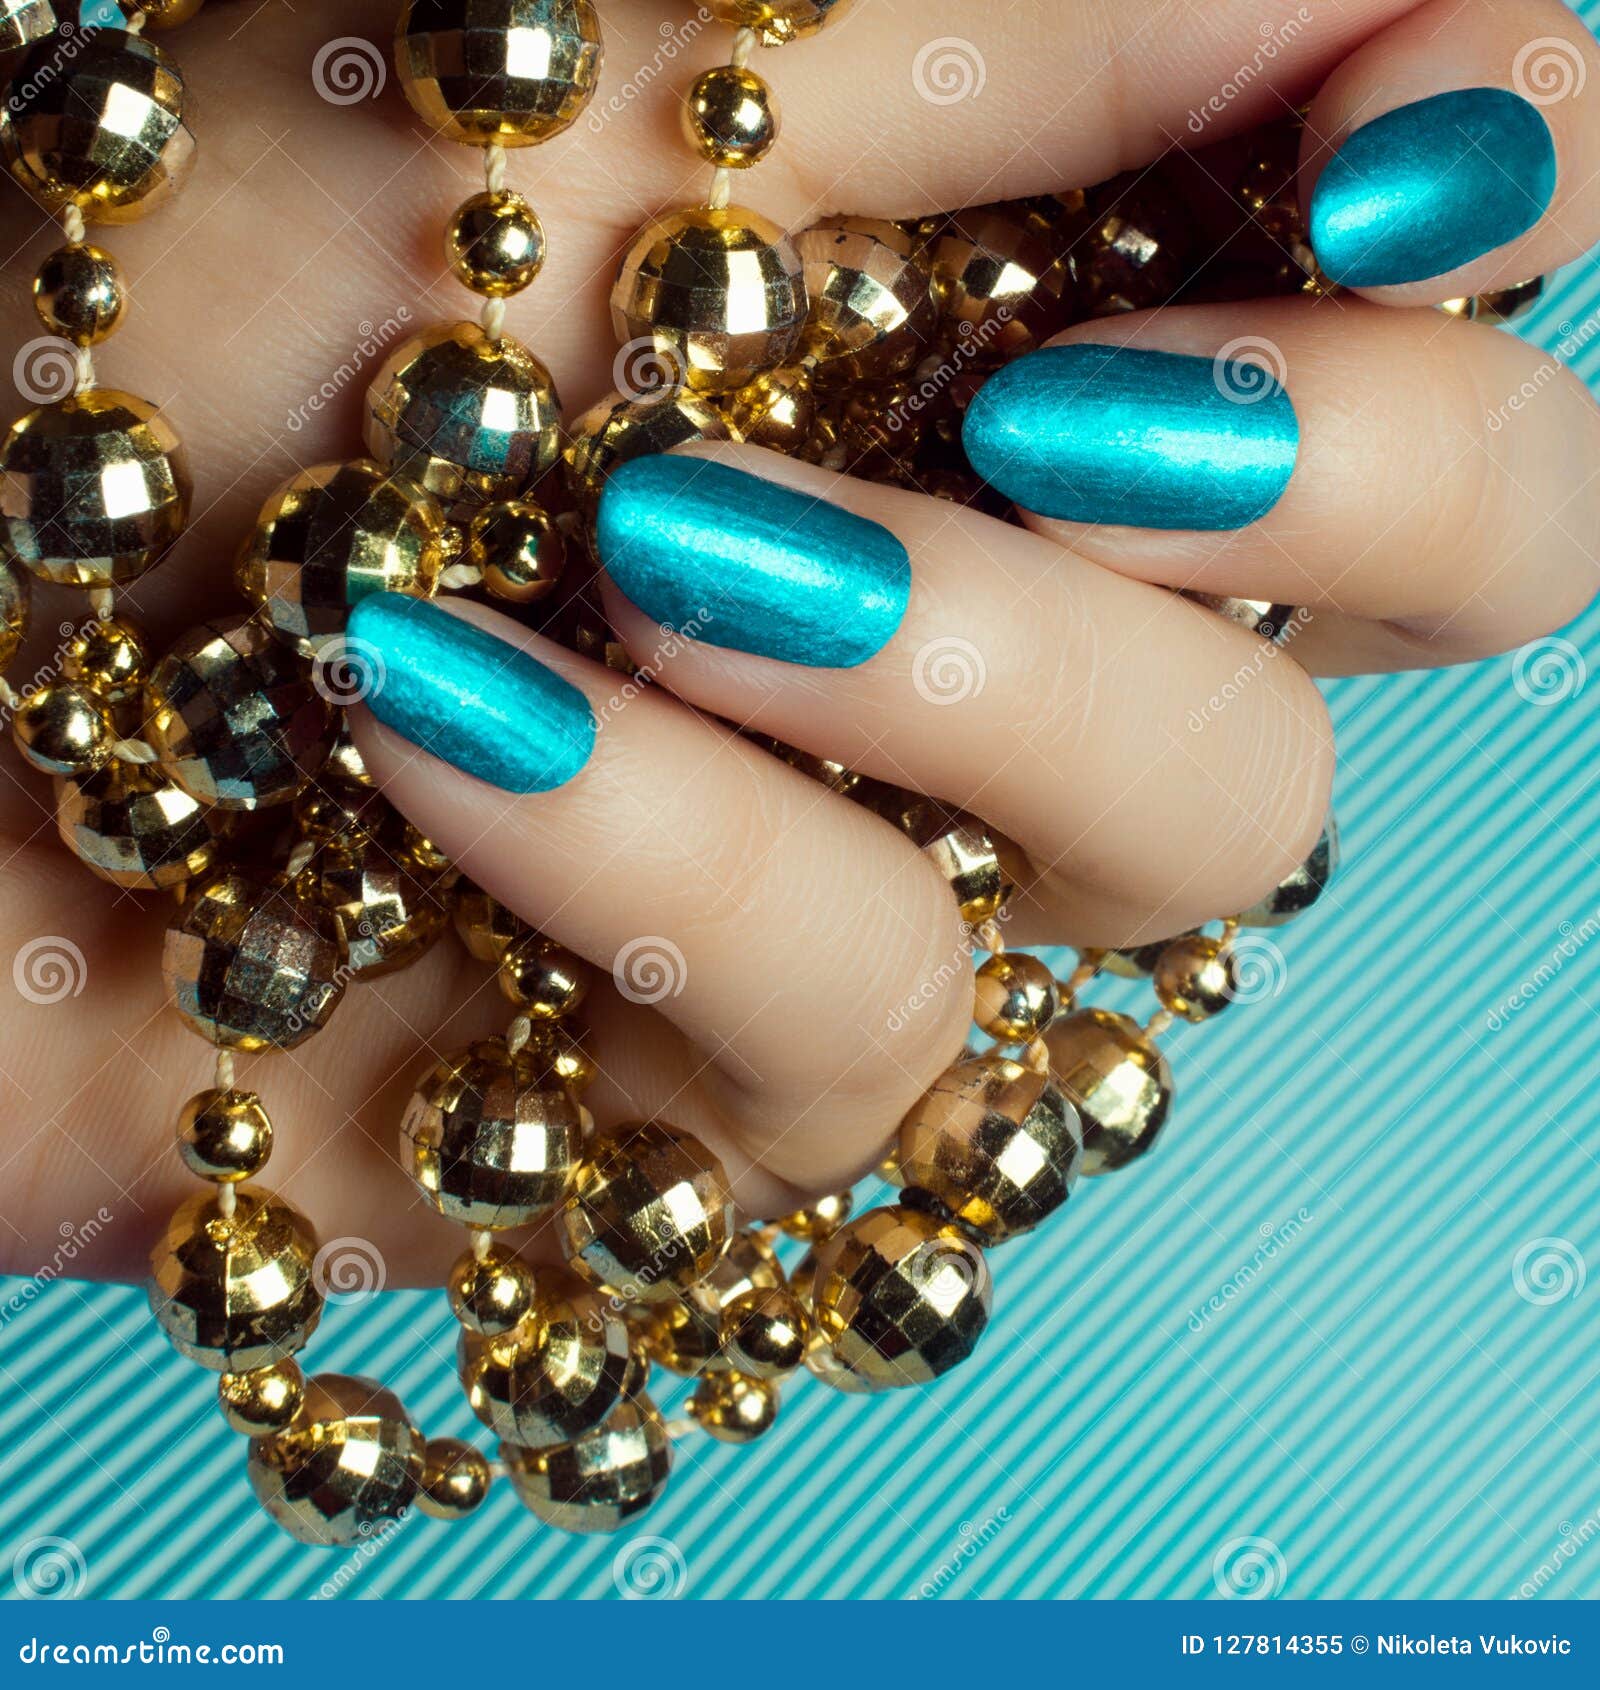 Blue Nails Manicure Stock Image Image Of Glamour Elegance 127814355